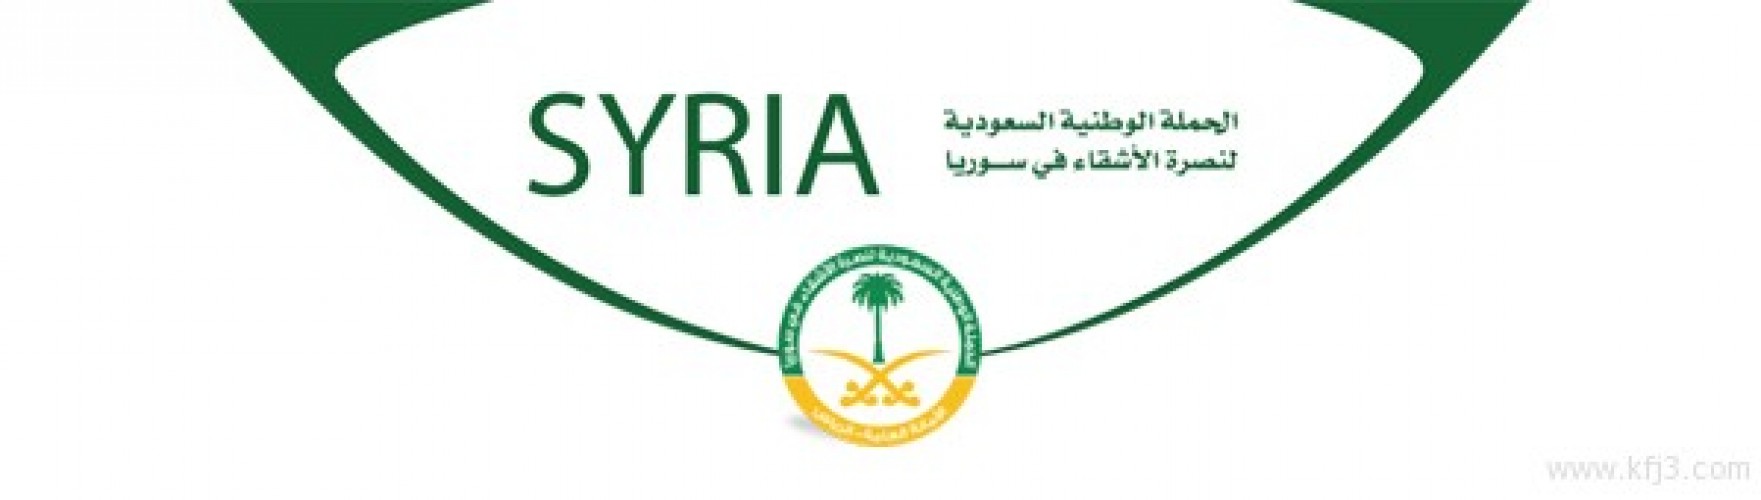 الحملة الوطنية السعودية لنصرة الأشقاء السوريين تبدأ بمشروع التسكين في لبنان